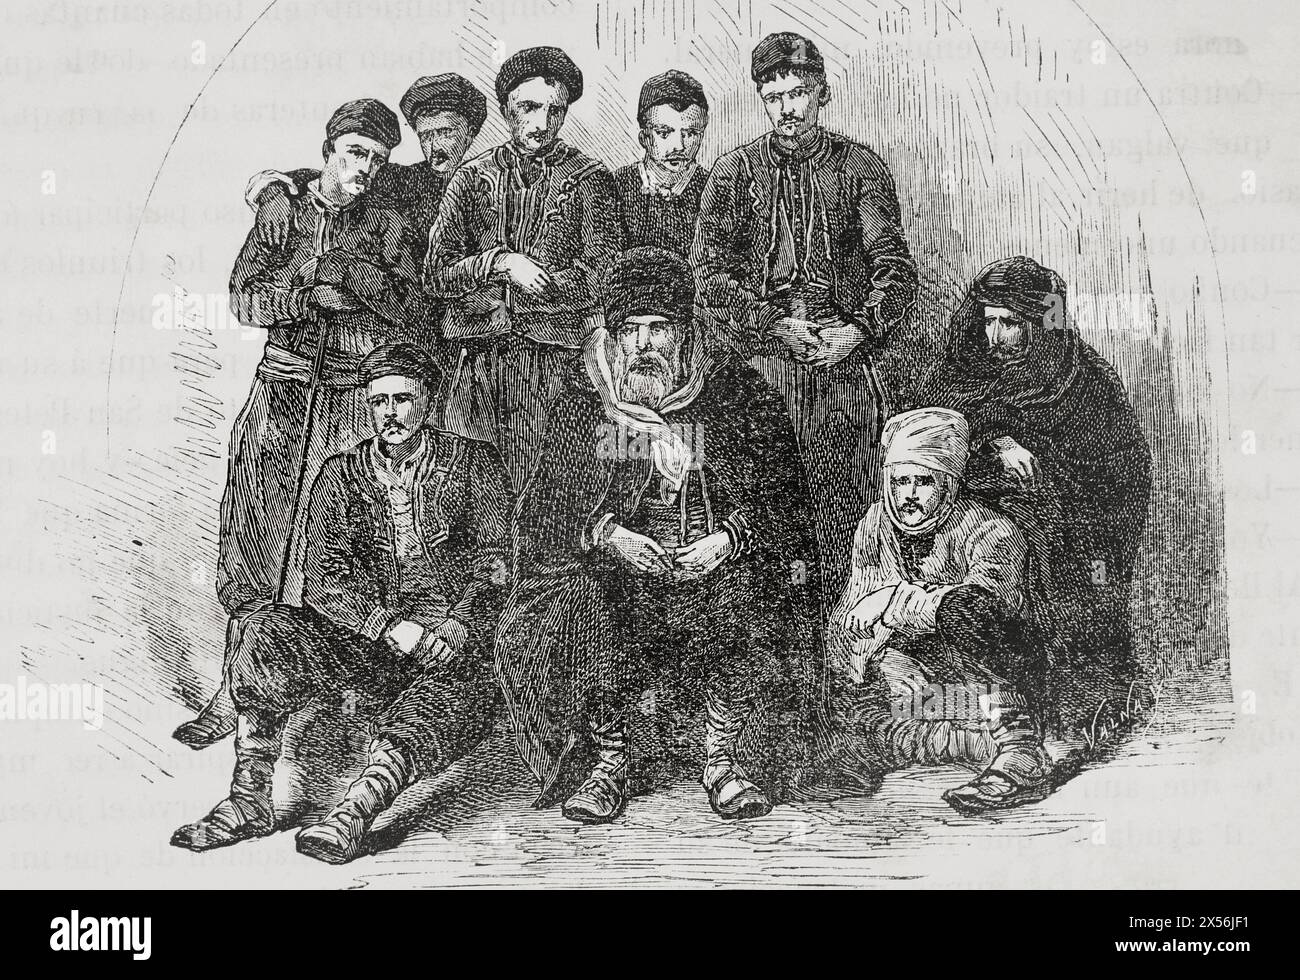 Bulgarische Dorfbewohner. Stich von Valnay. "La Guerra de Oriente" (russisch-türkischer Krieg). Band I. 1877. Stockfoto